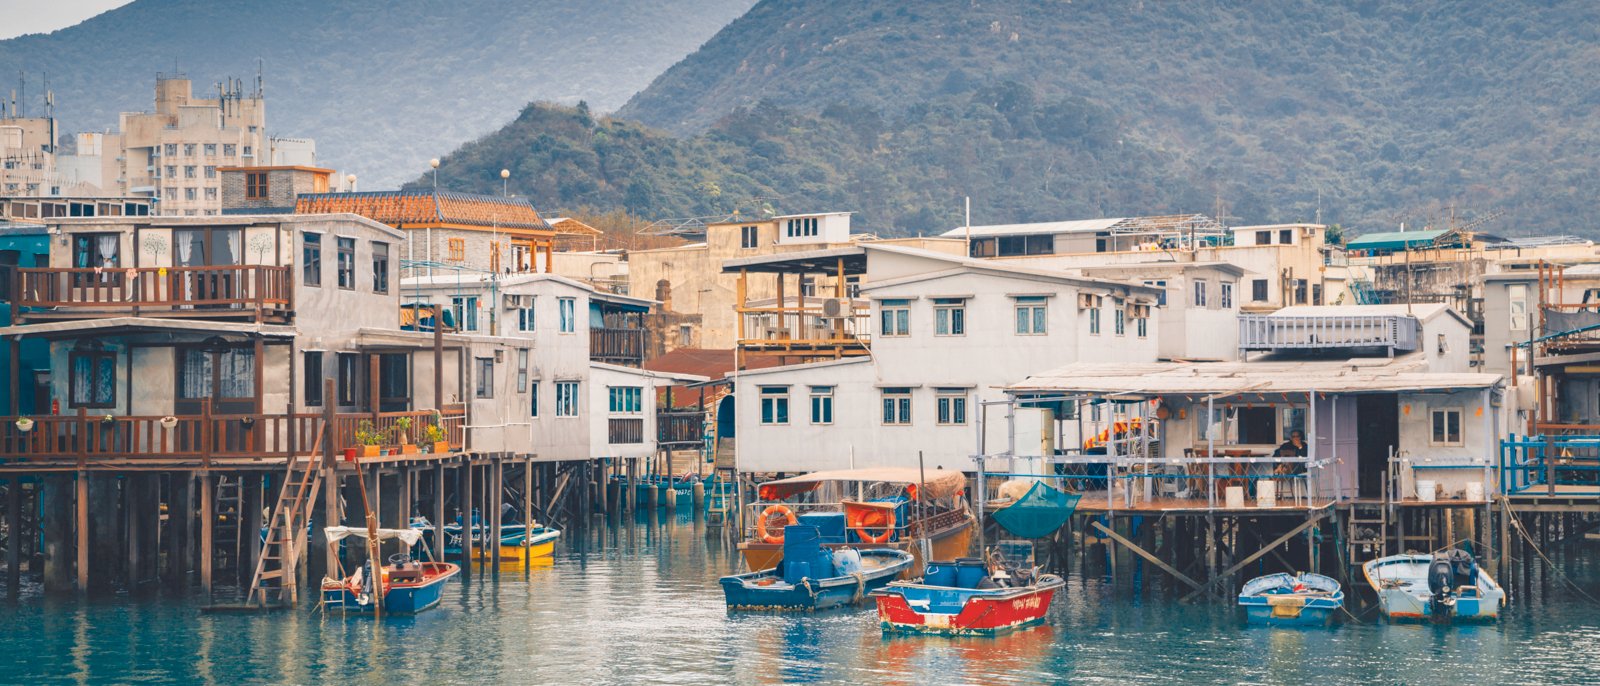 Tai o fishing village, Old floating house and sea in HongKong